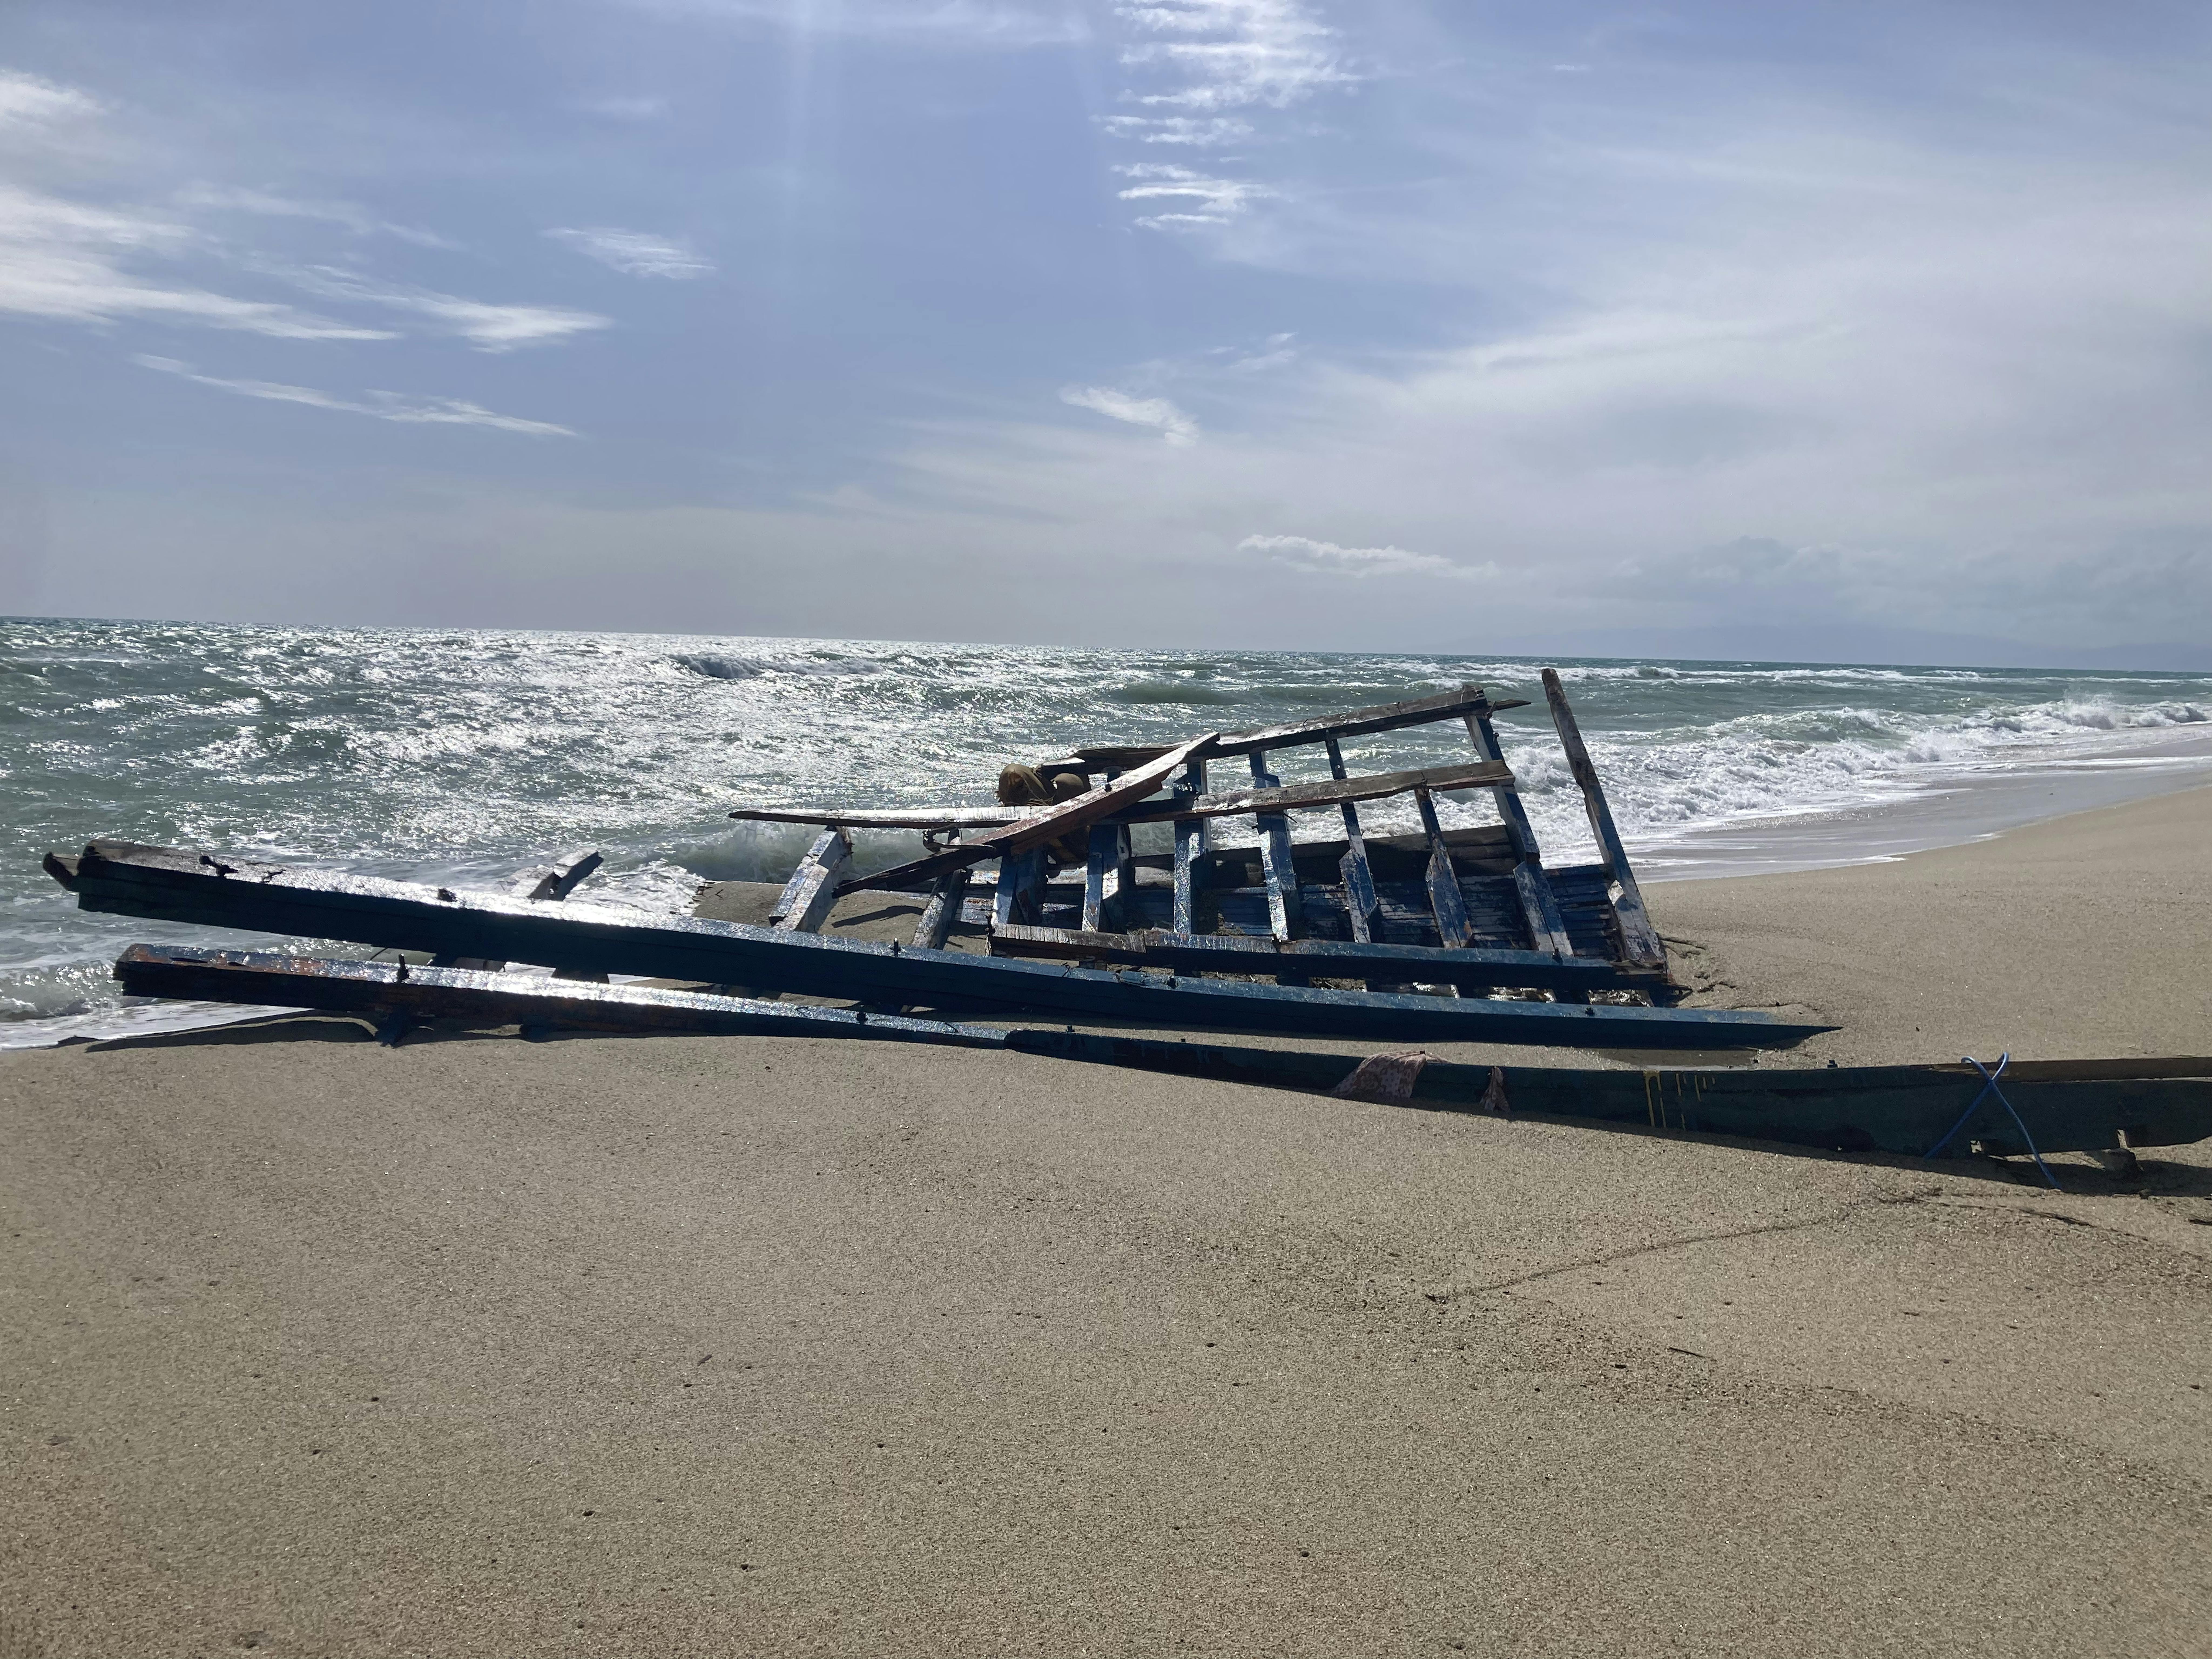 Resti dell'imbarcazionesulla spiaggia di Steccato di Cutro, la località della costa crotonese in cui si è verificato il naufragio lo scorso 26 febbraio